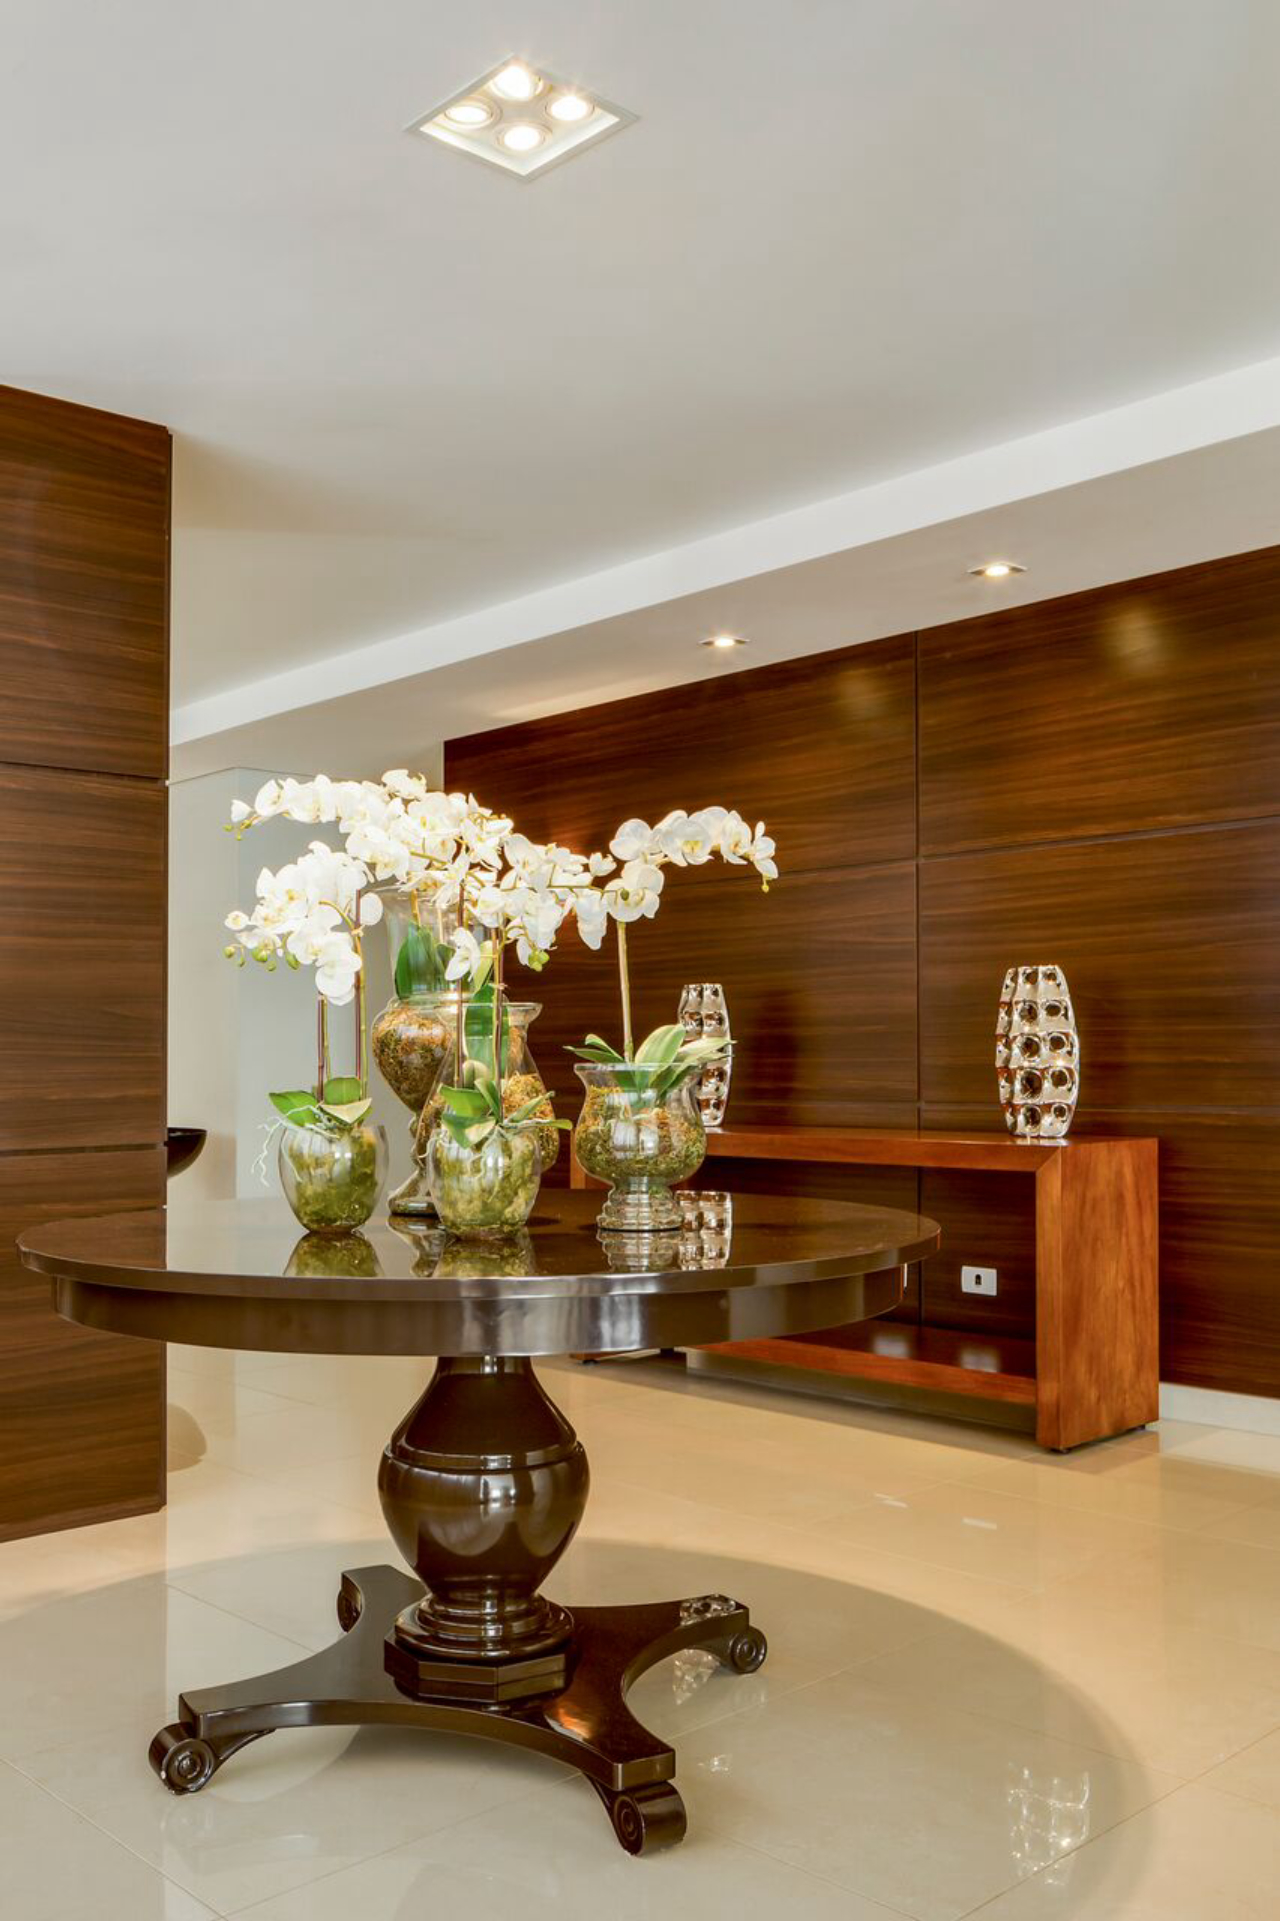 Os painéis de madeira oferecem conforto visual, ao mesmo tempo que aquecem o ambiente. A mesa central fica ainda mais em evidência com a iluminação direcionada. 